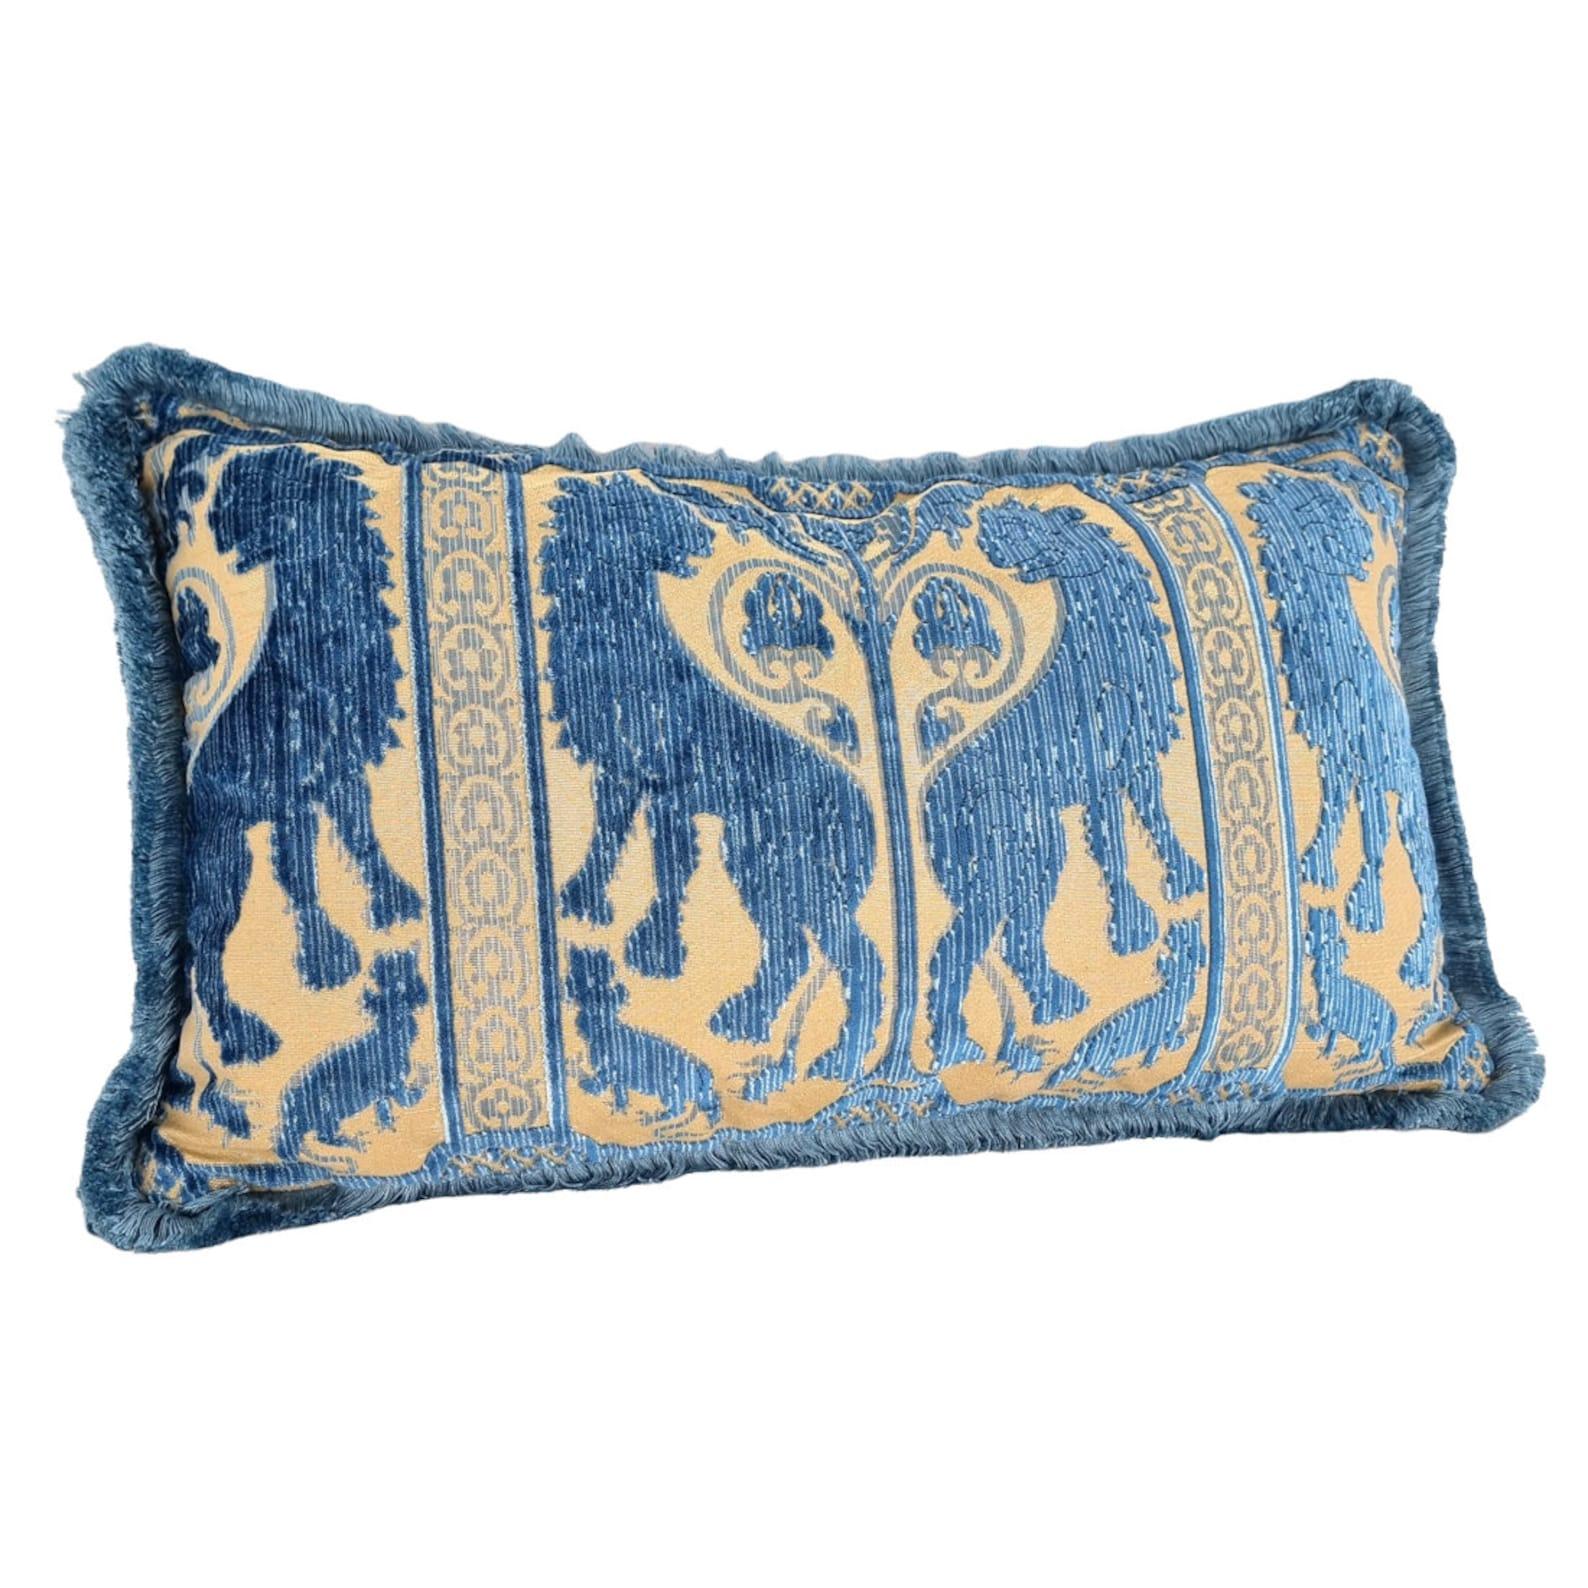 Dieses erstaunliche Lendenkissen ist handgefertigt aus dem ikonischen Leoni Bizantini - Design aus dem XII-XIV Jahrhundert - Seidenhecksamt in indigoblauer Farbe von 'Tessitura Luigi Bevilacqua', dem historischen und angesehenen Textilunternehmen